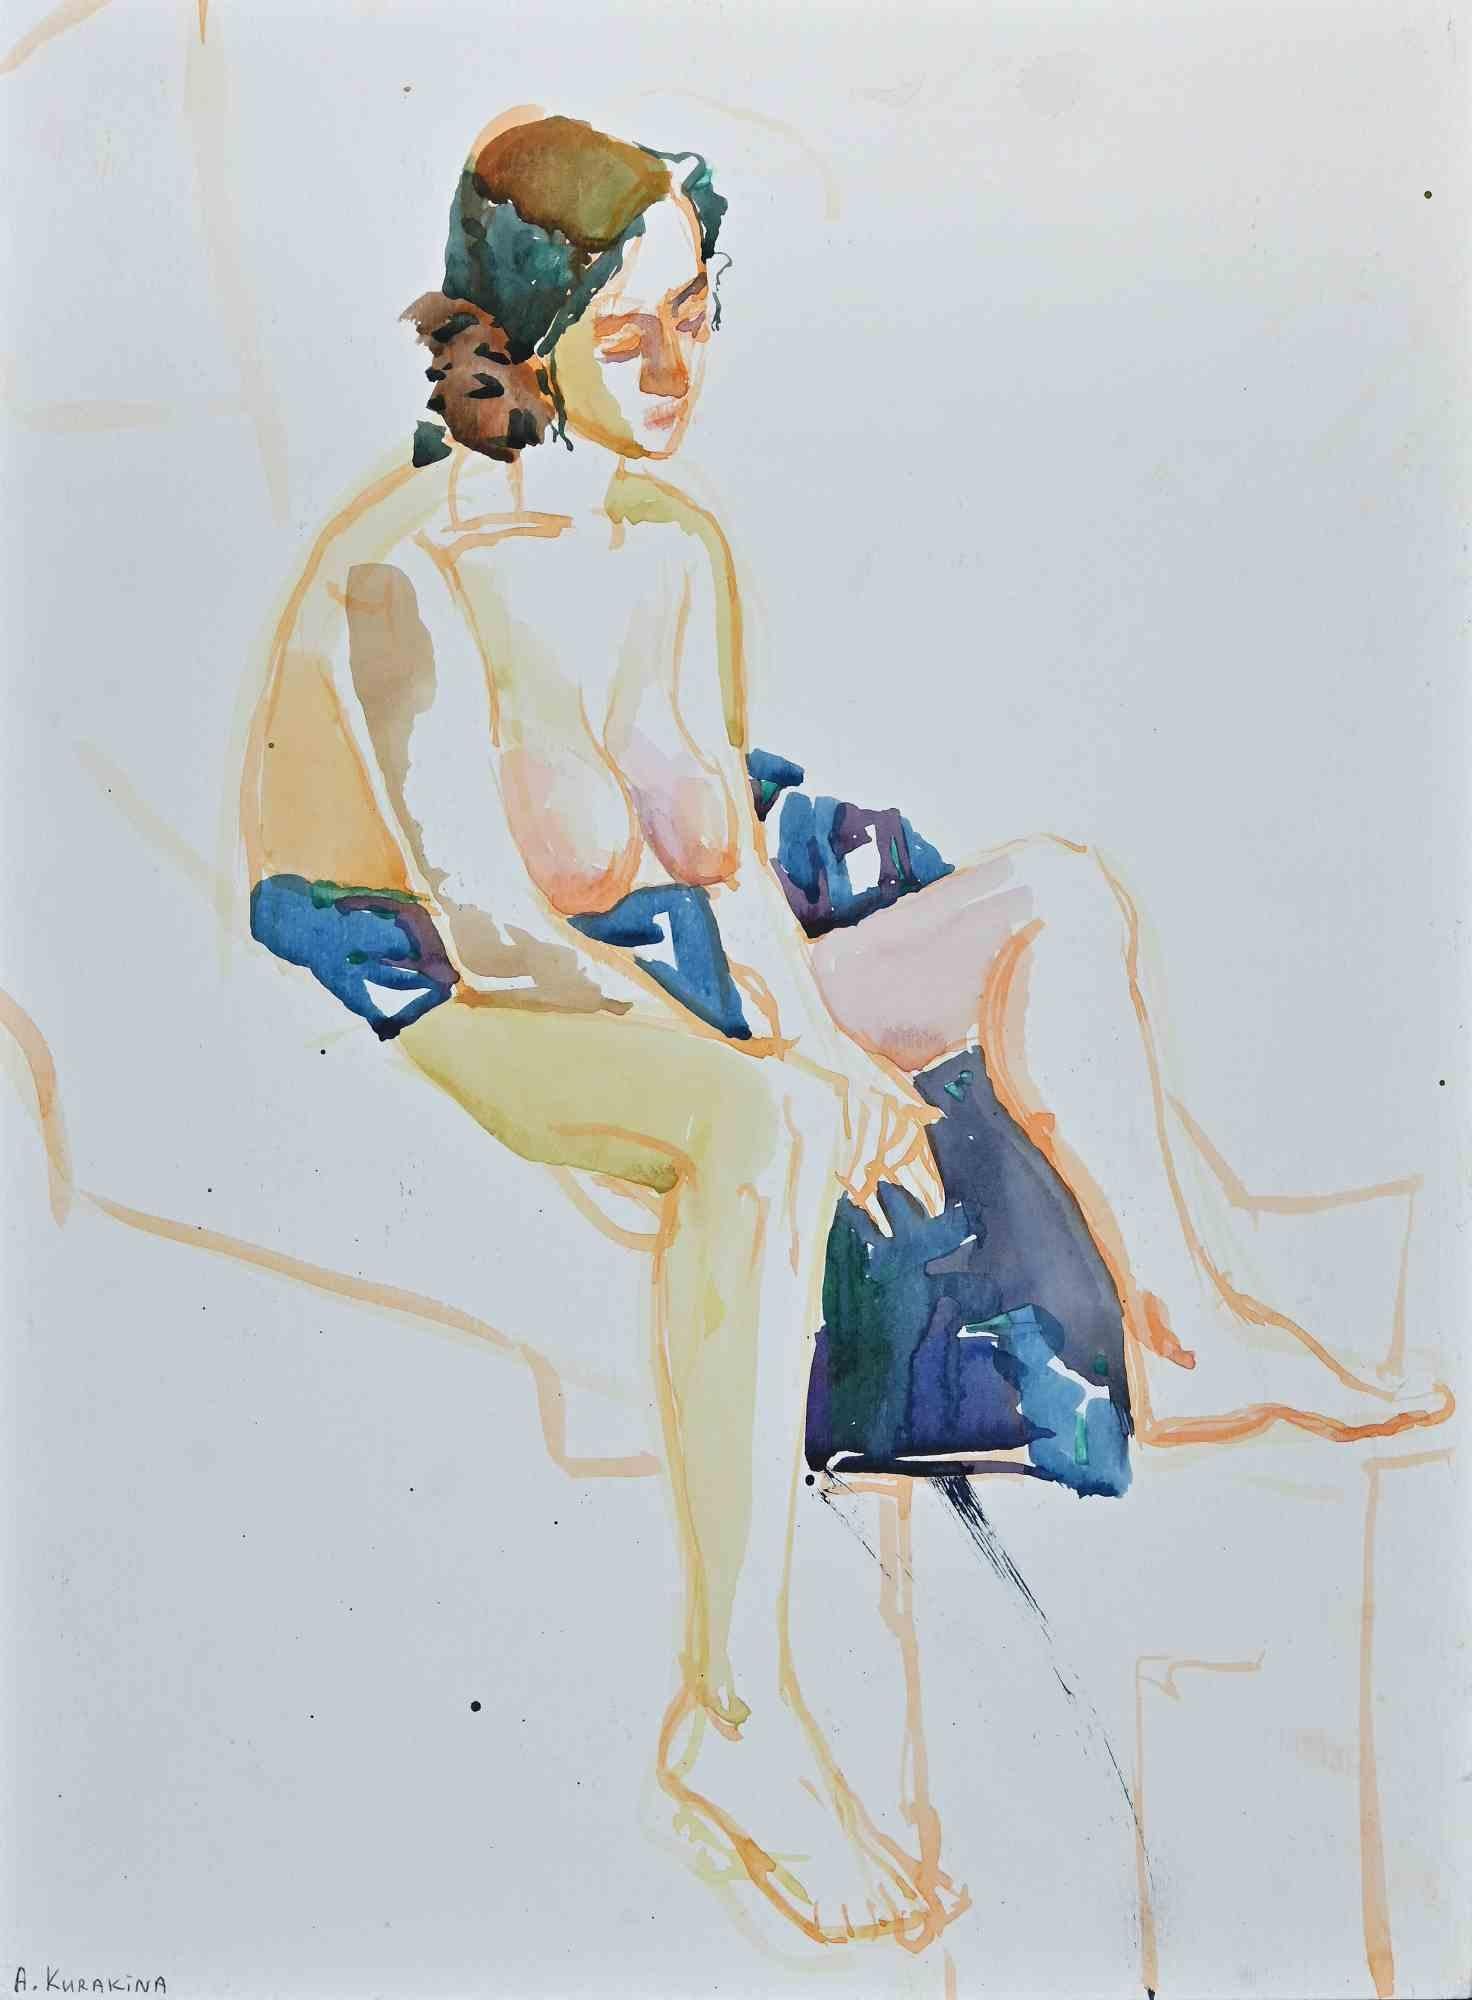 Woman's Nude est une aquarelle réalisée par Anastasia Kurakina en 2018.

L'œuvre d'art est en bon état et présente des couleurs vives.

Signé à la main par l'artiste dans le coin inférieur gauche.

Anastasia Kurakina est née à Moscou en 1987. Elle